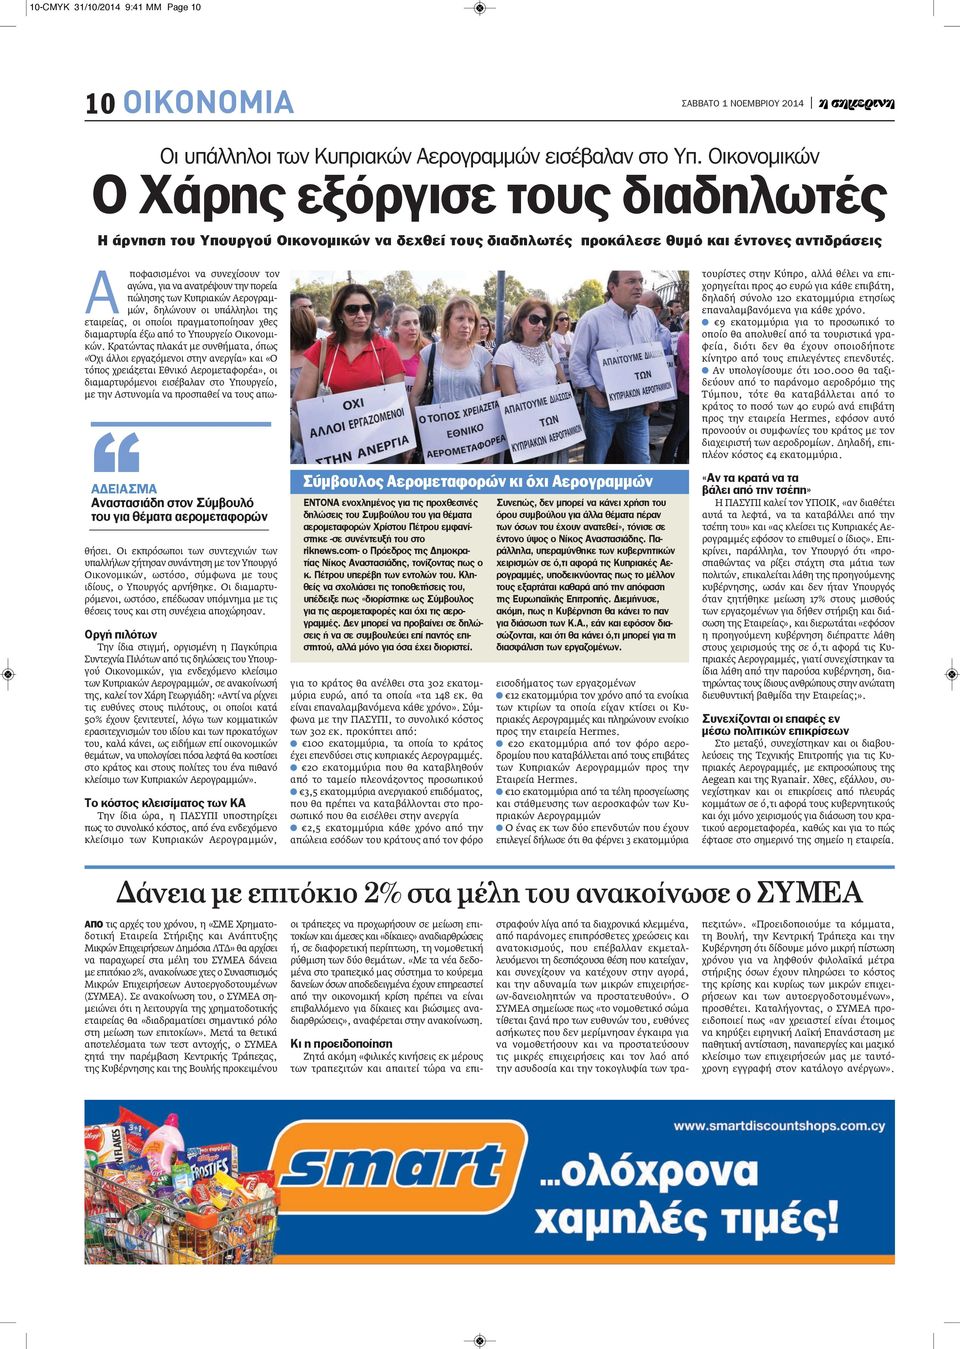 αερομεταφορών Α ποφασισμένοι να συνεχίσουν τον αγώνα, για να ανατρέψουν την πορεία πώλησης των Κυπριακών Αερογραμμών, δηλώνουν οι υπάλληλοι της εταιρείας, οι οποίοι πραγματοποίησαν χθες διαμαρτυρία